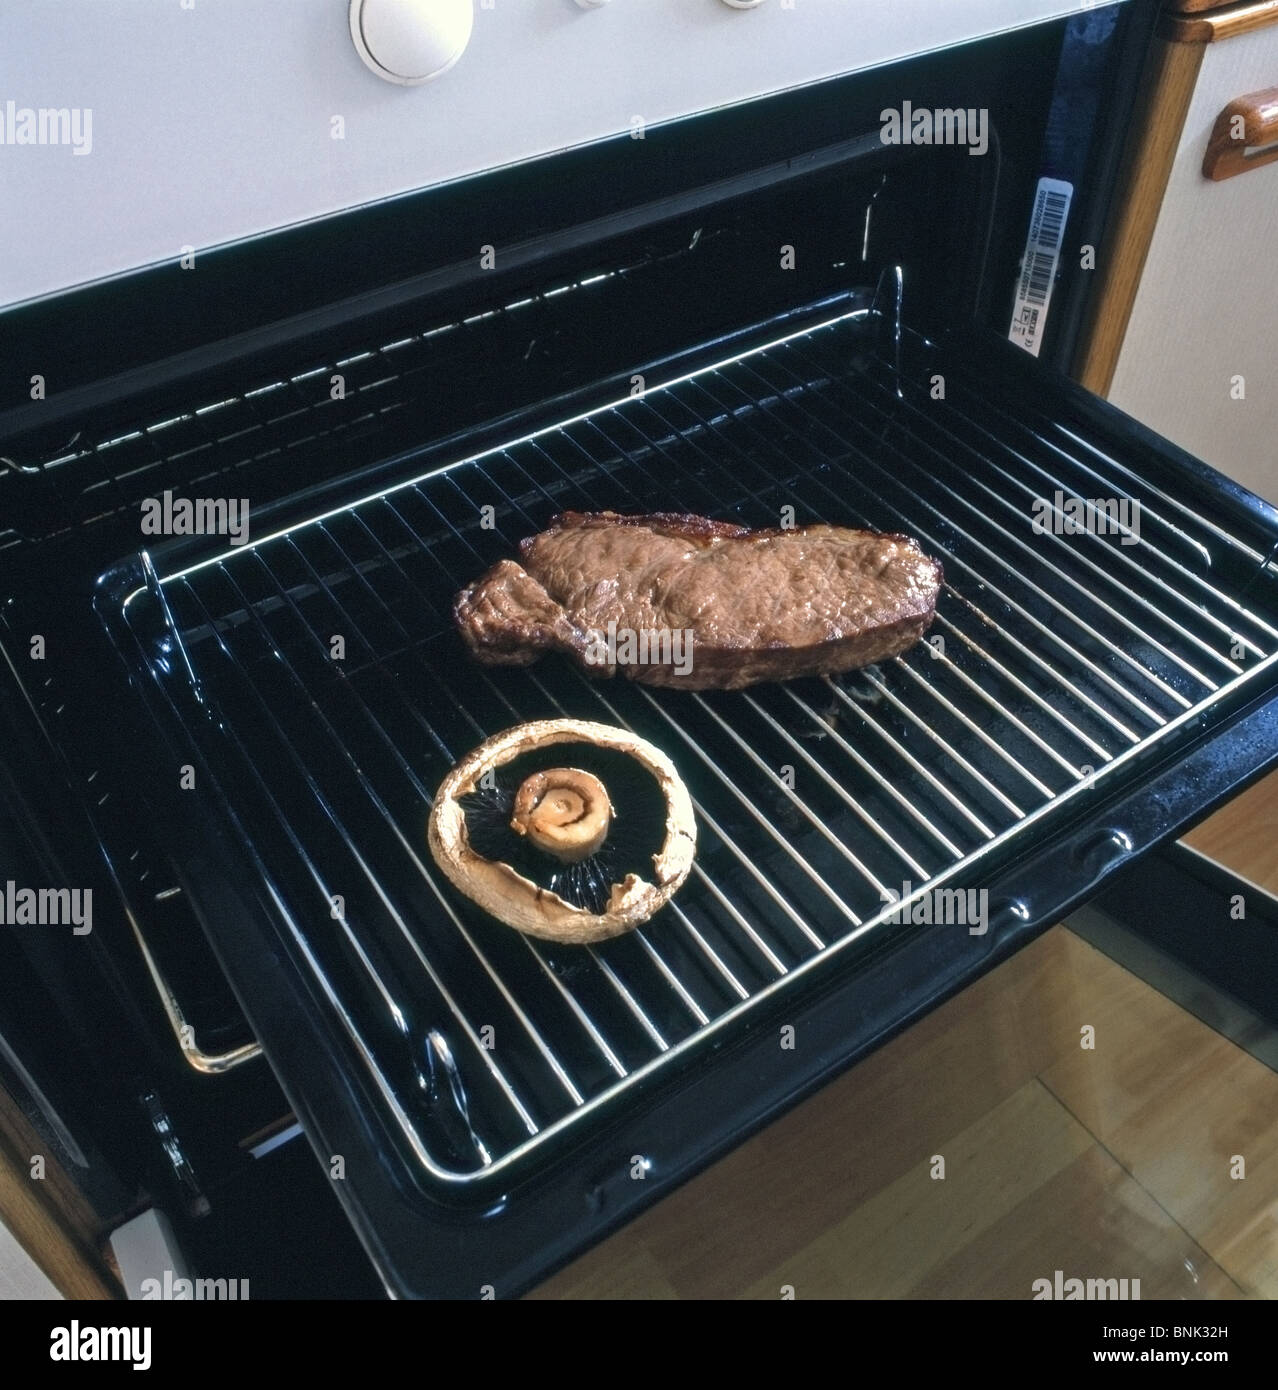 Steak de surlonge cuit et Flat Mushroom sur un gril prises sous un four grill dans un cadre domestique Banque D'Images